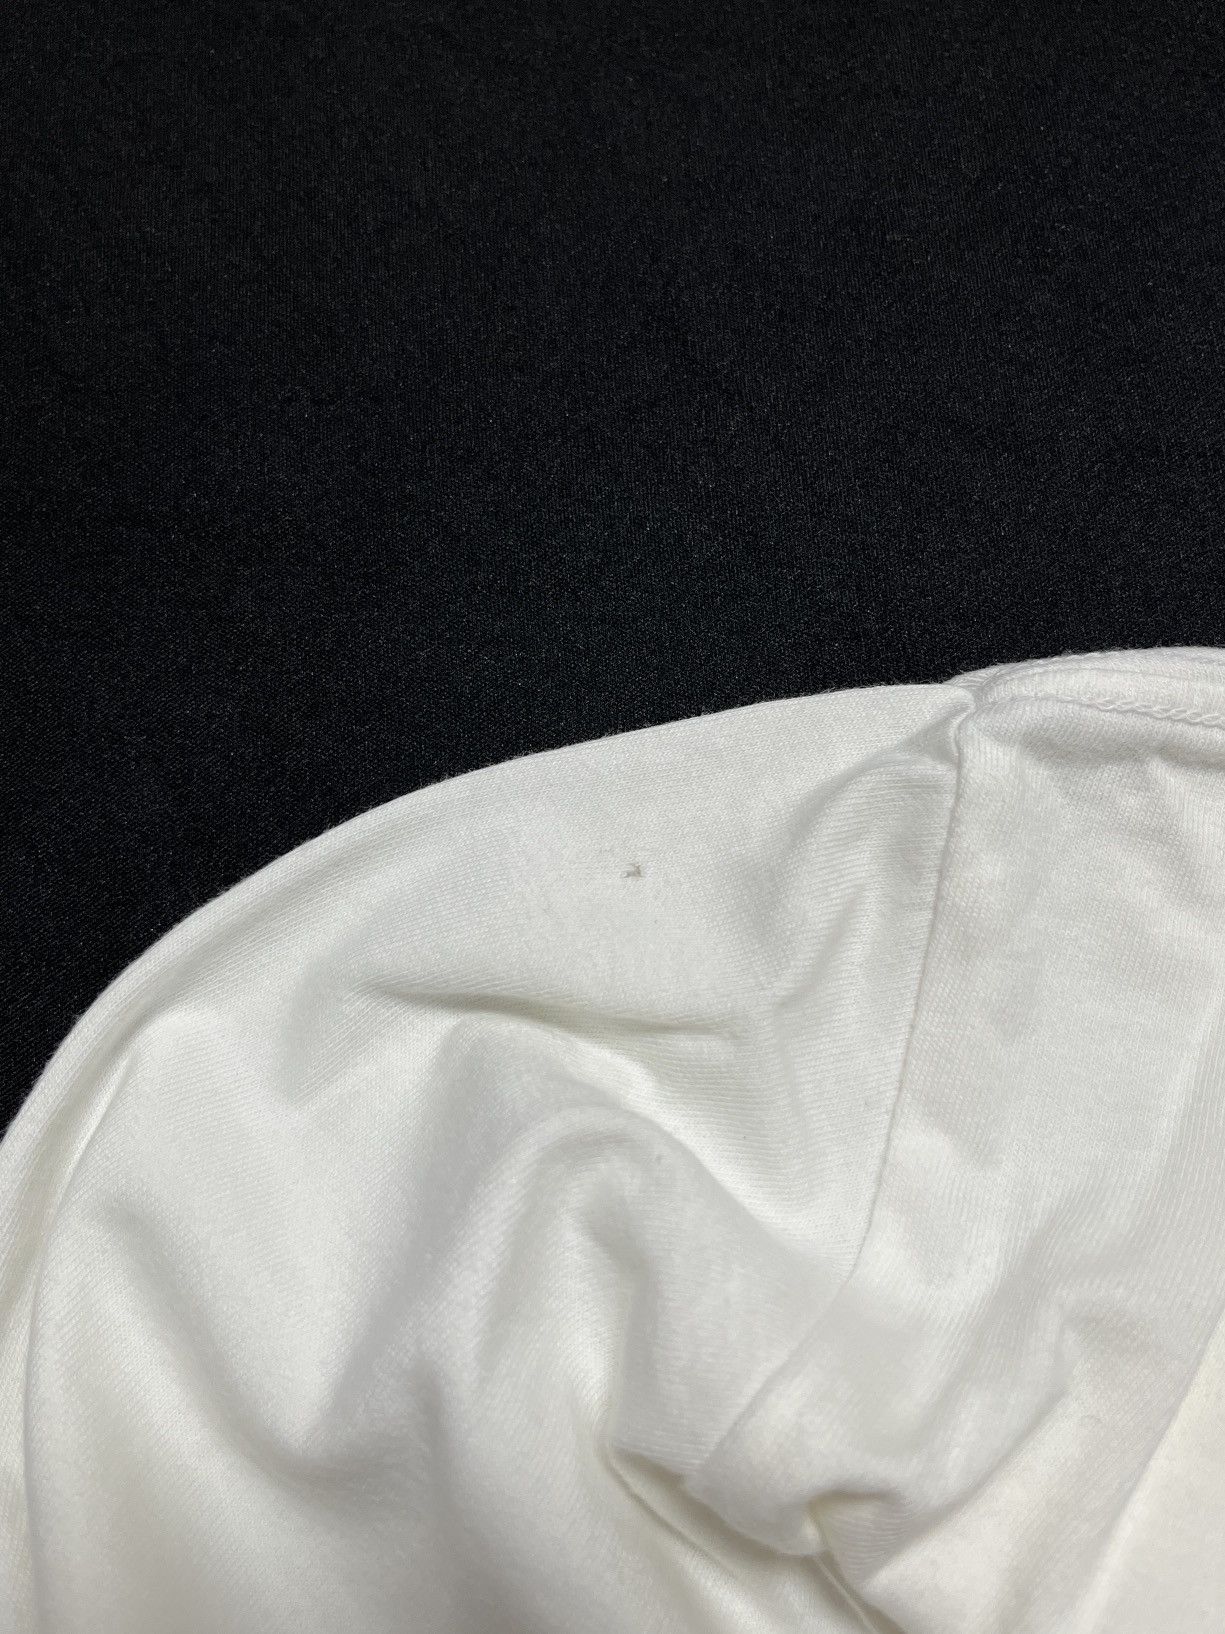 Vintage Nike Sportswear NSW Long Sleeves Shirt White Medium - 7